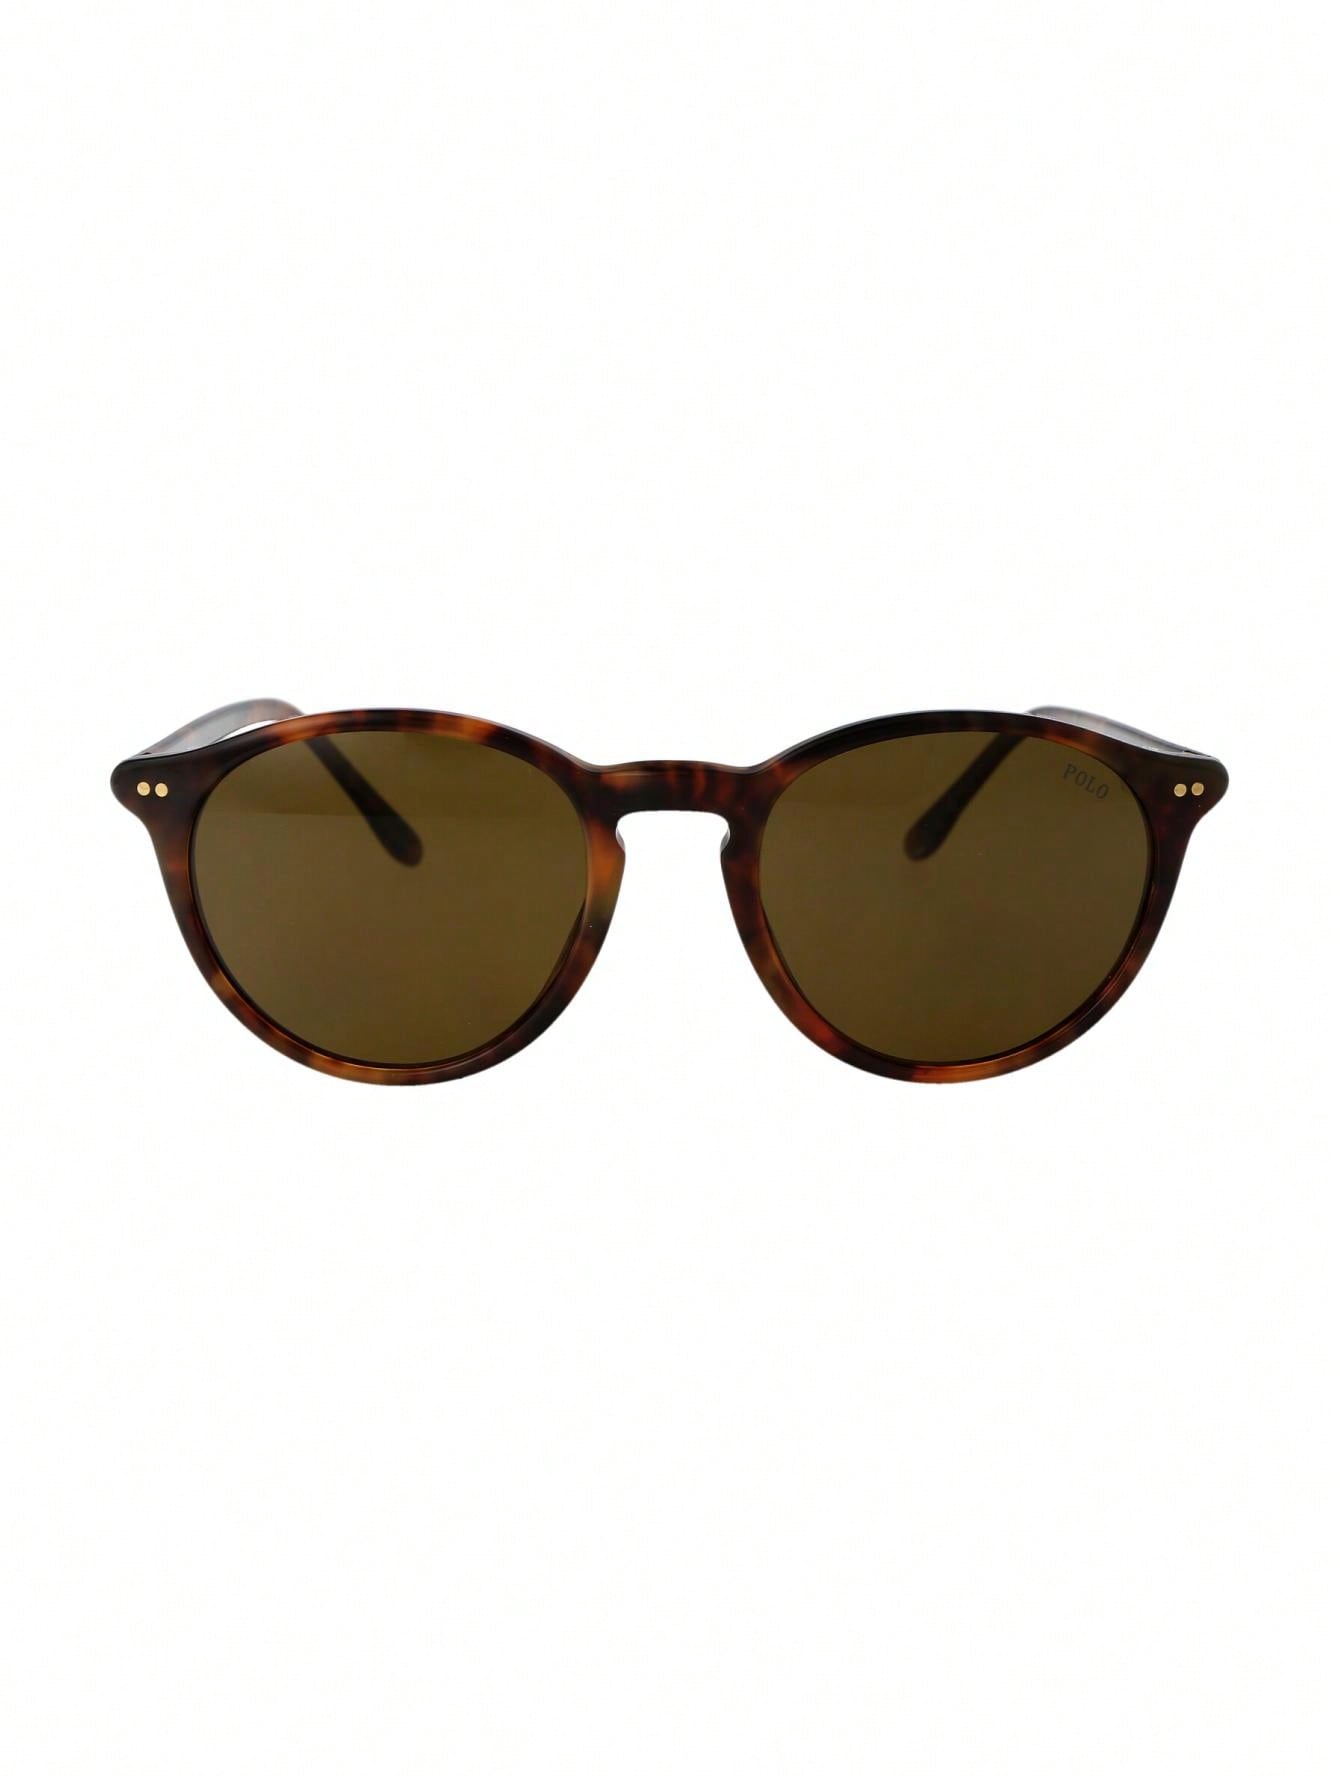 Мужские солнцезащитные очки Polo Ralph Lauren DECOR 0PH4193501773, многоцветный мужские солнцезащитные очки polo ph4187 ralph lauren блестящее платье гордон коричневый